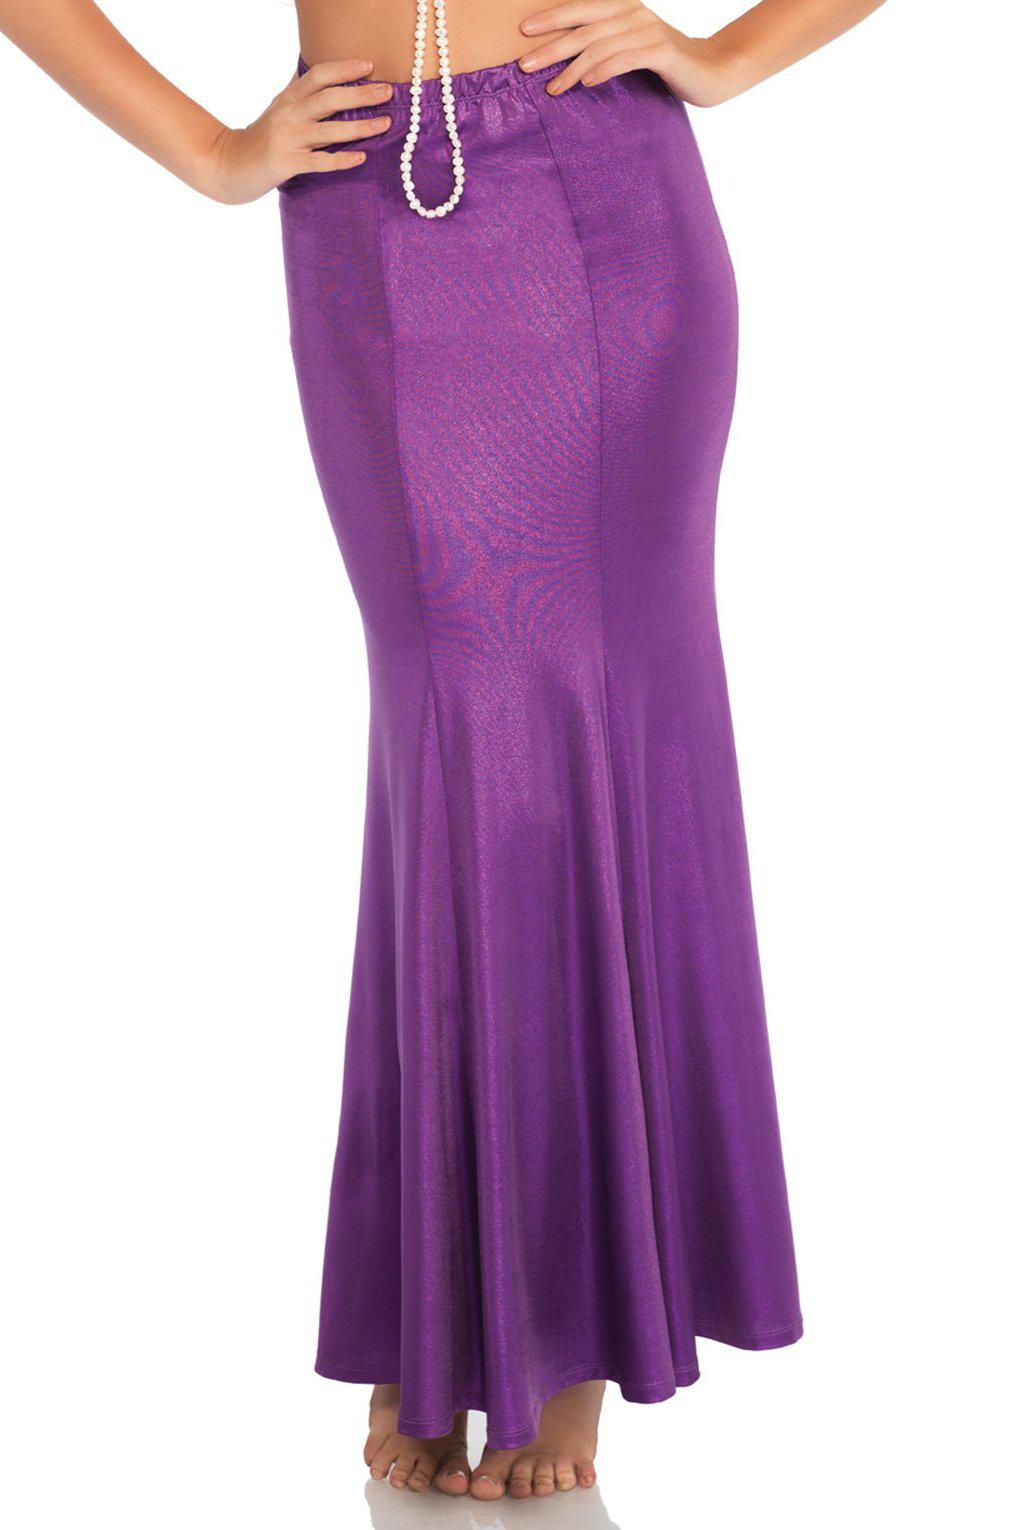 Plus Size Shimmer Spandex Mermaid Skirt-Mermaid Costumes-Leg Avenue-Purple-1/2XL-SEXYSHOES.COM